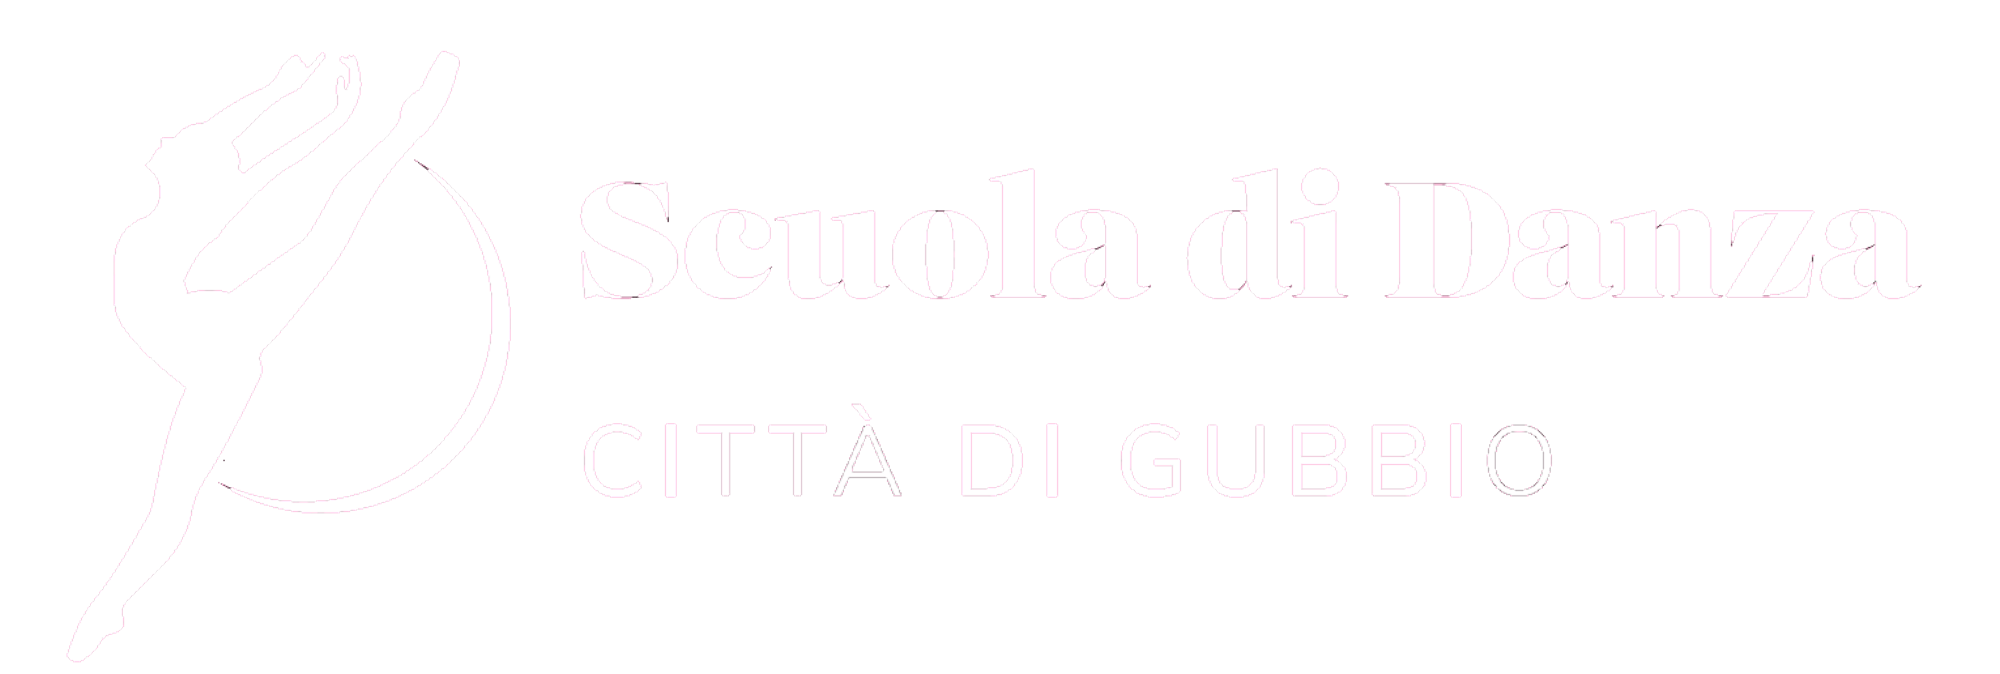 Scuola di Danza Città di Gubbio